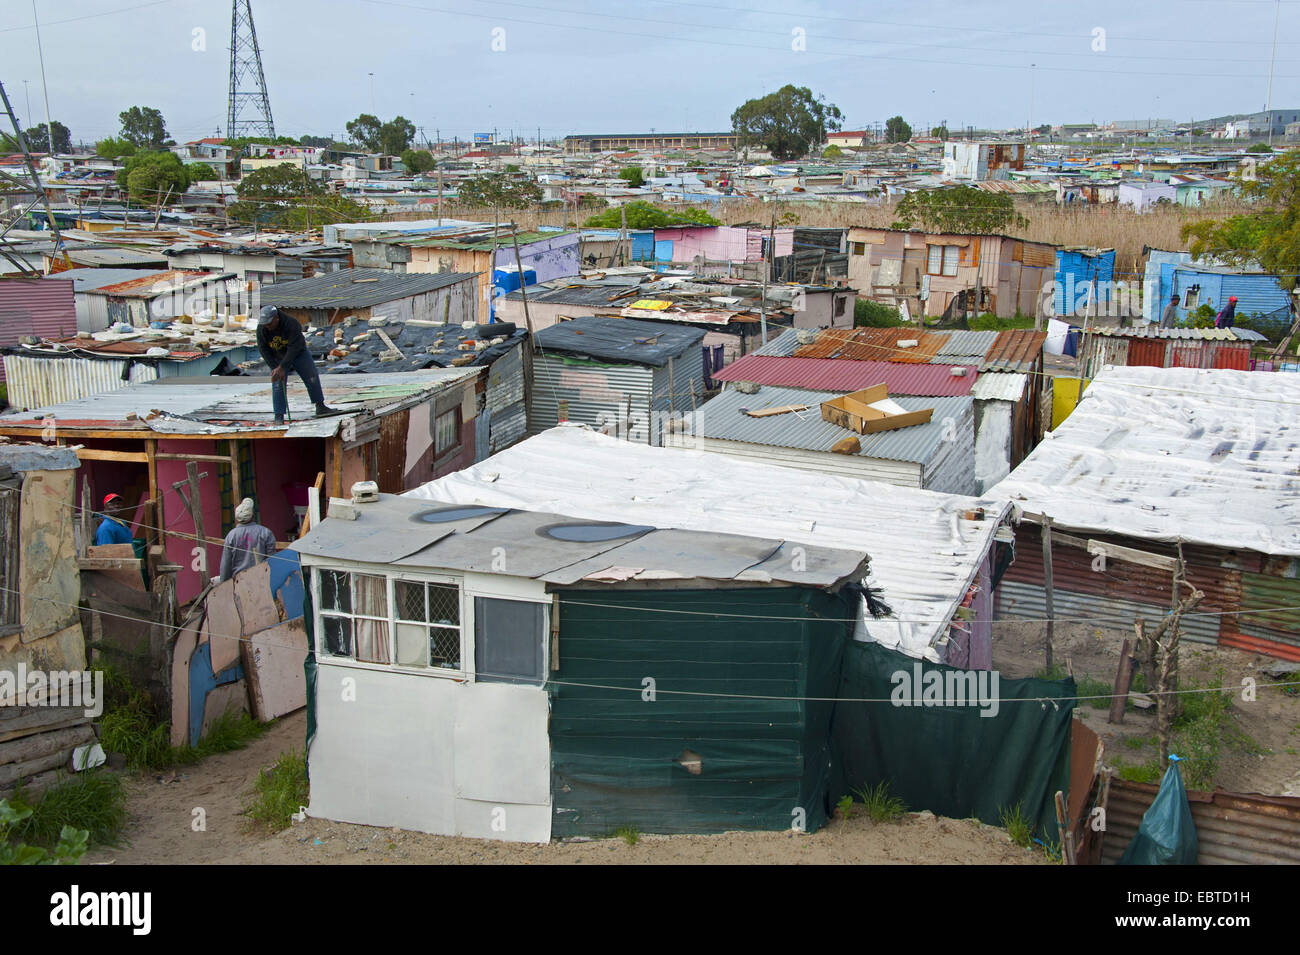 Vue sur la mer de caserne du bidonville, Afrique du Sud, Western Cape, Cape Town Banque D'Images